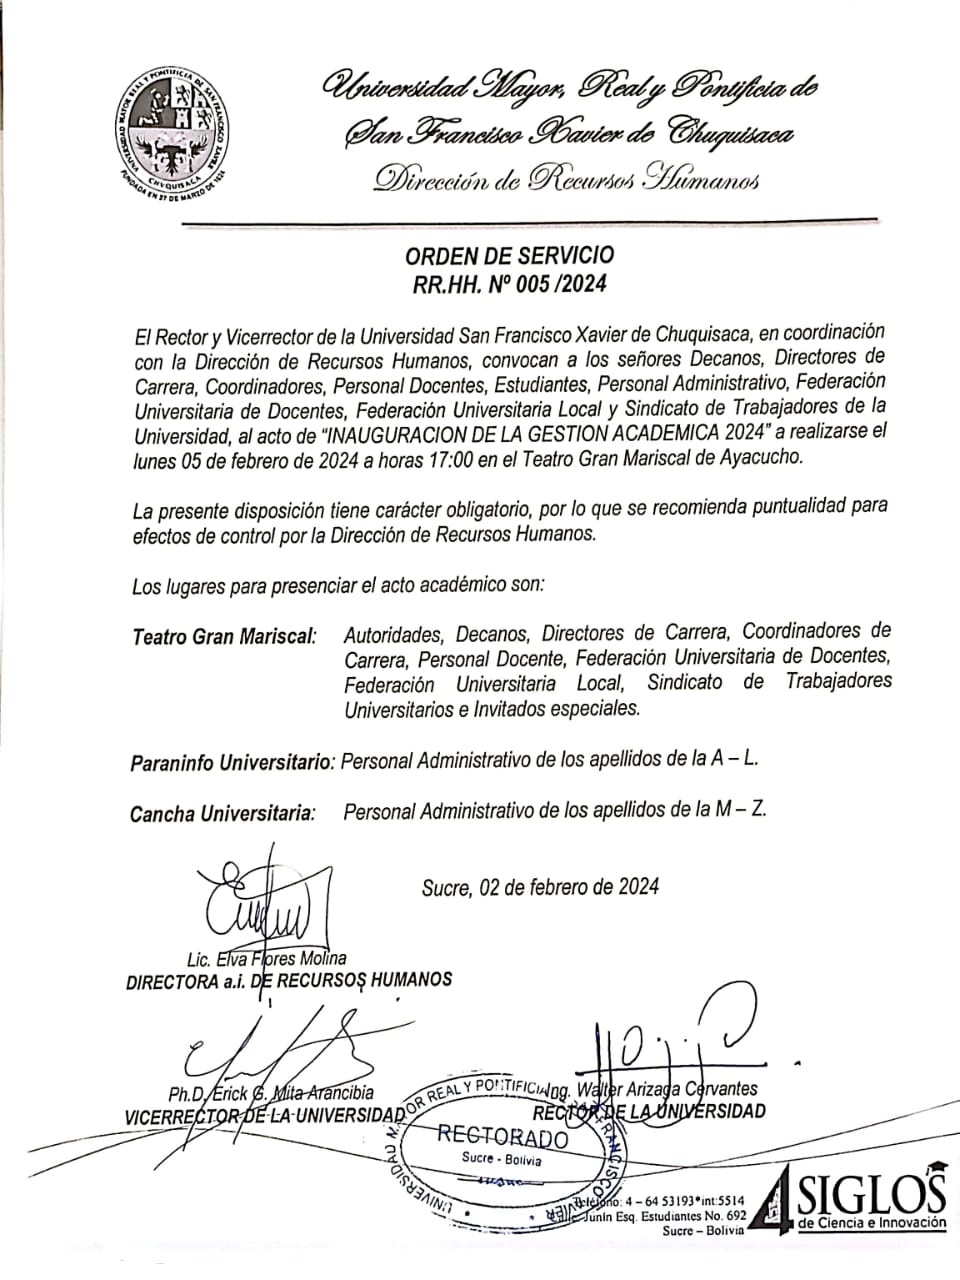 ORDEN DE SERVICIO RR.HH. Nº 005/2024, INAUGURACIÓN DE LA GESTIÓN ACADÉMICA 2024.